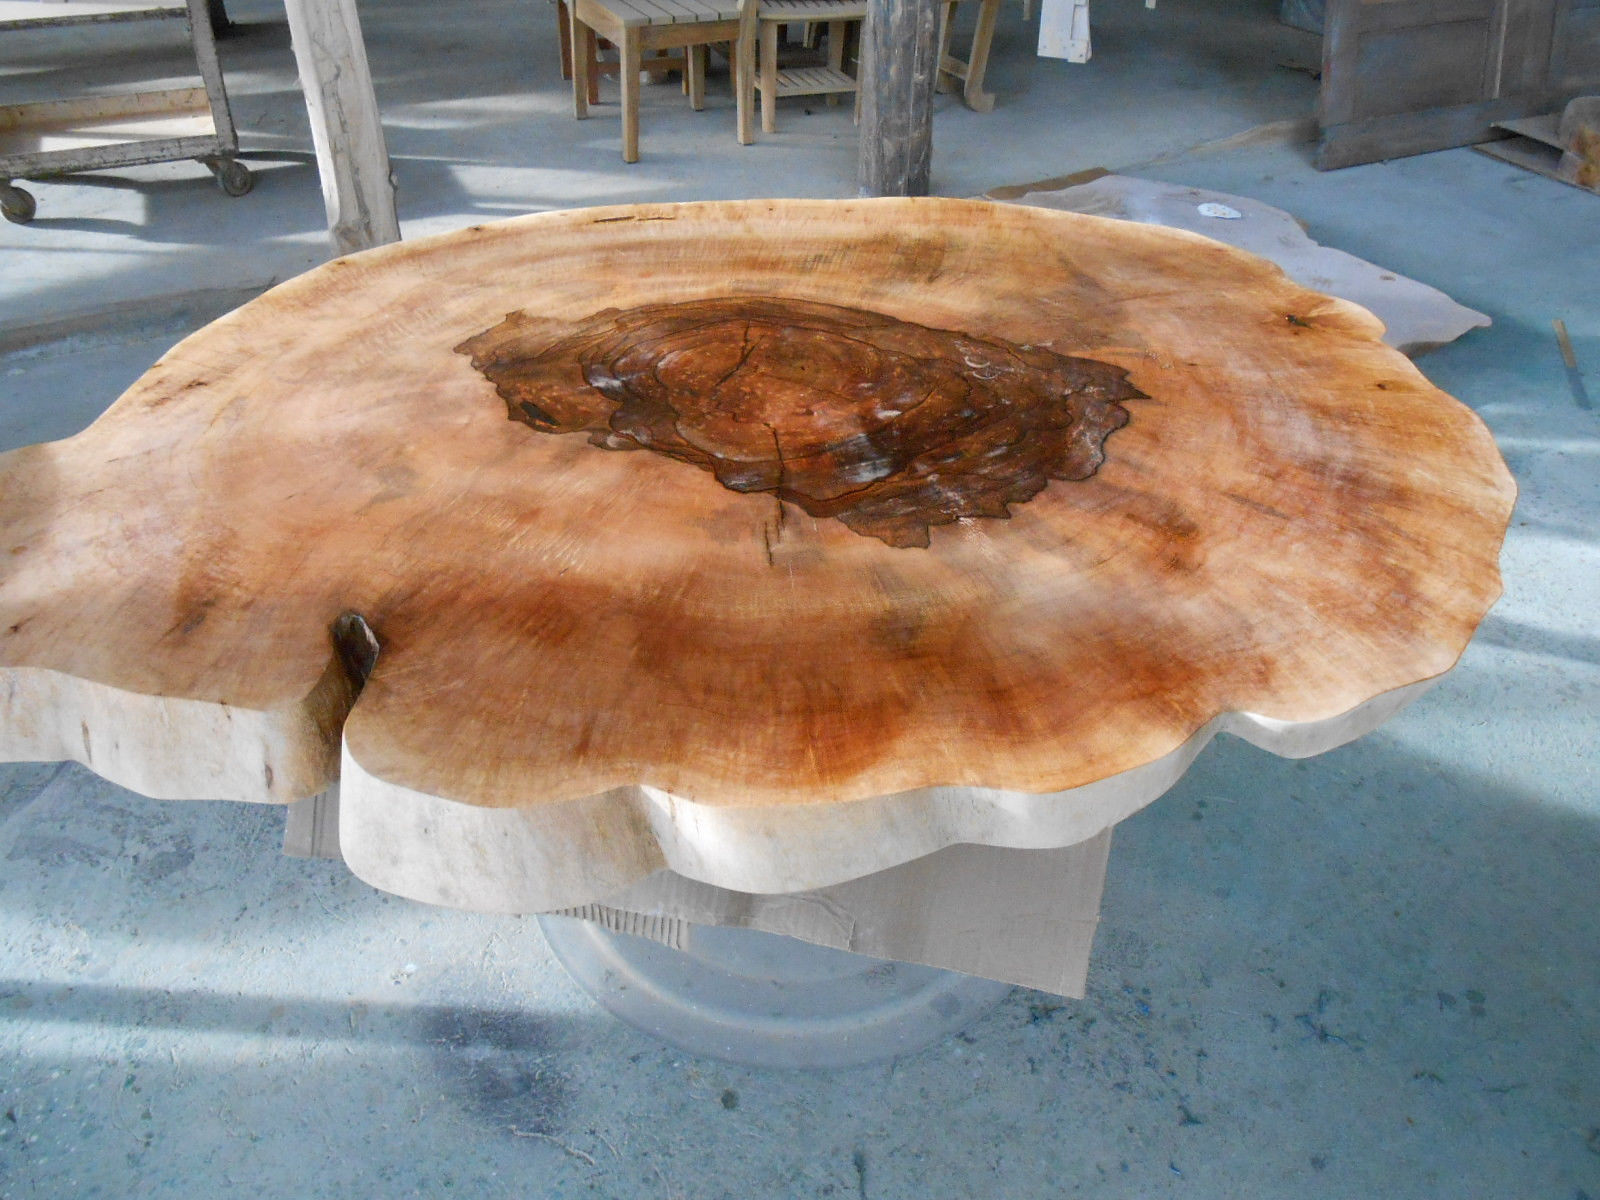 Top 5 des plus belles tables basses en bois récemment vendues !